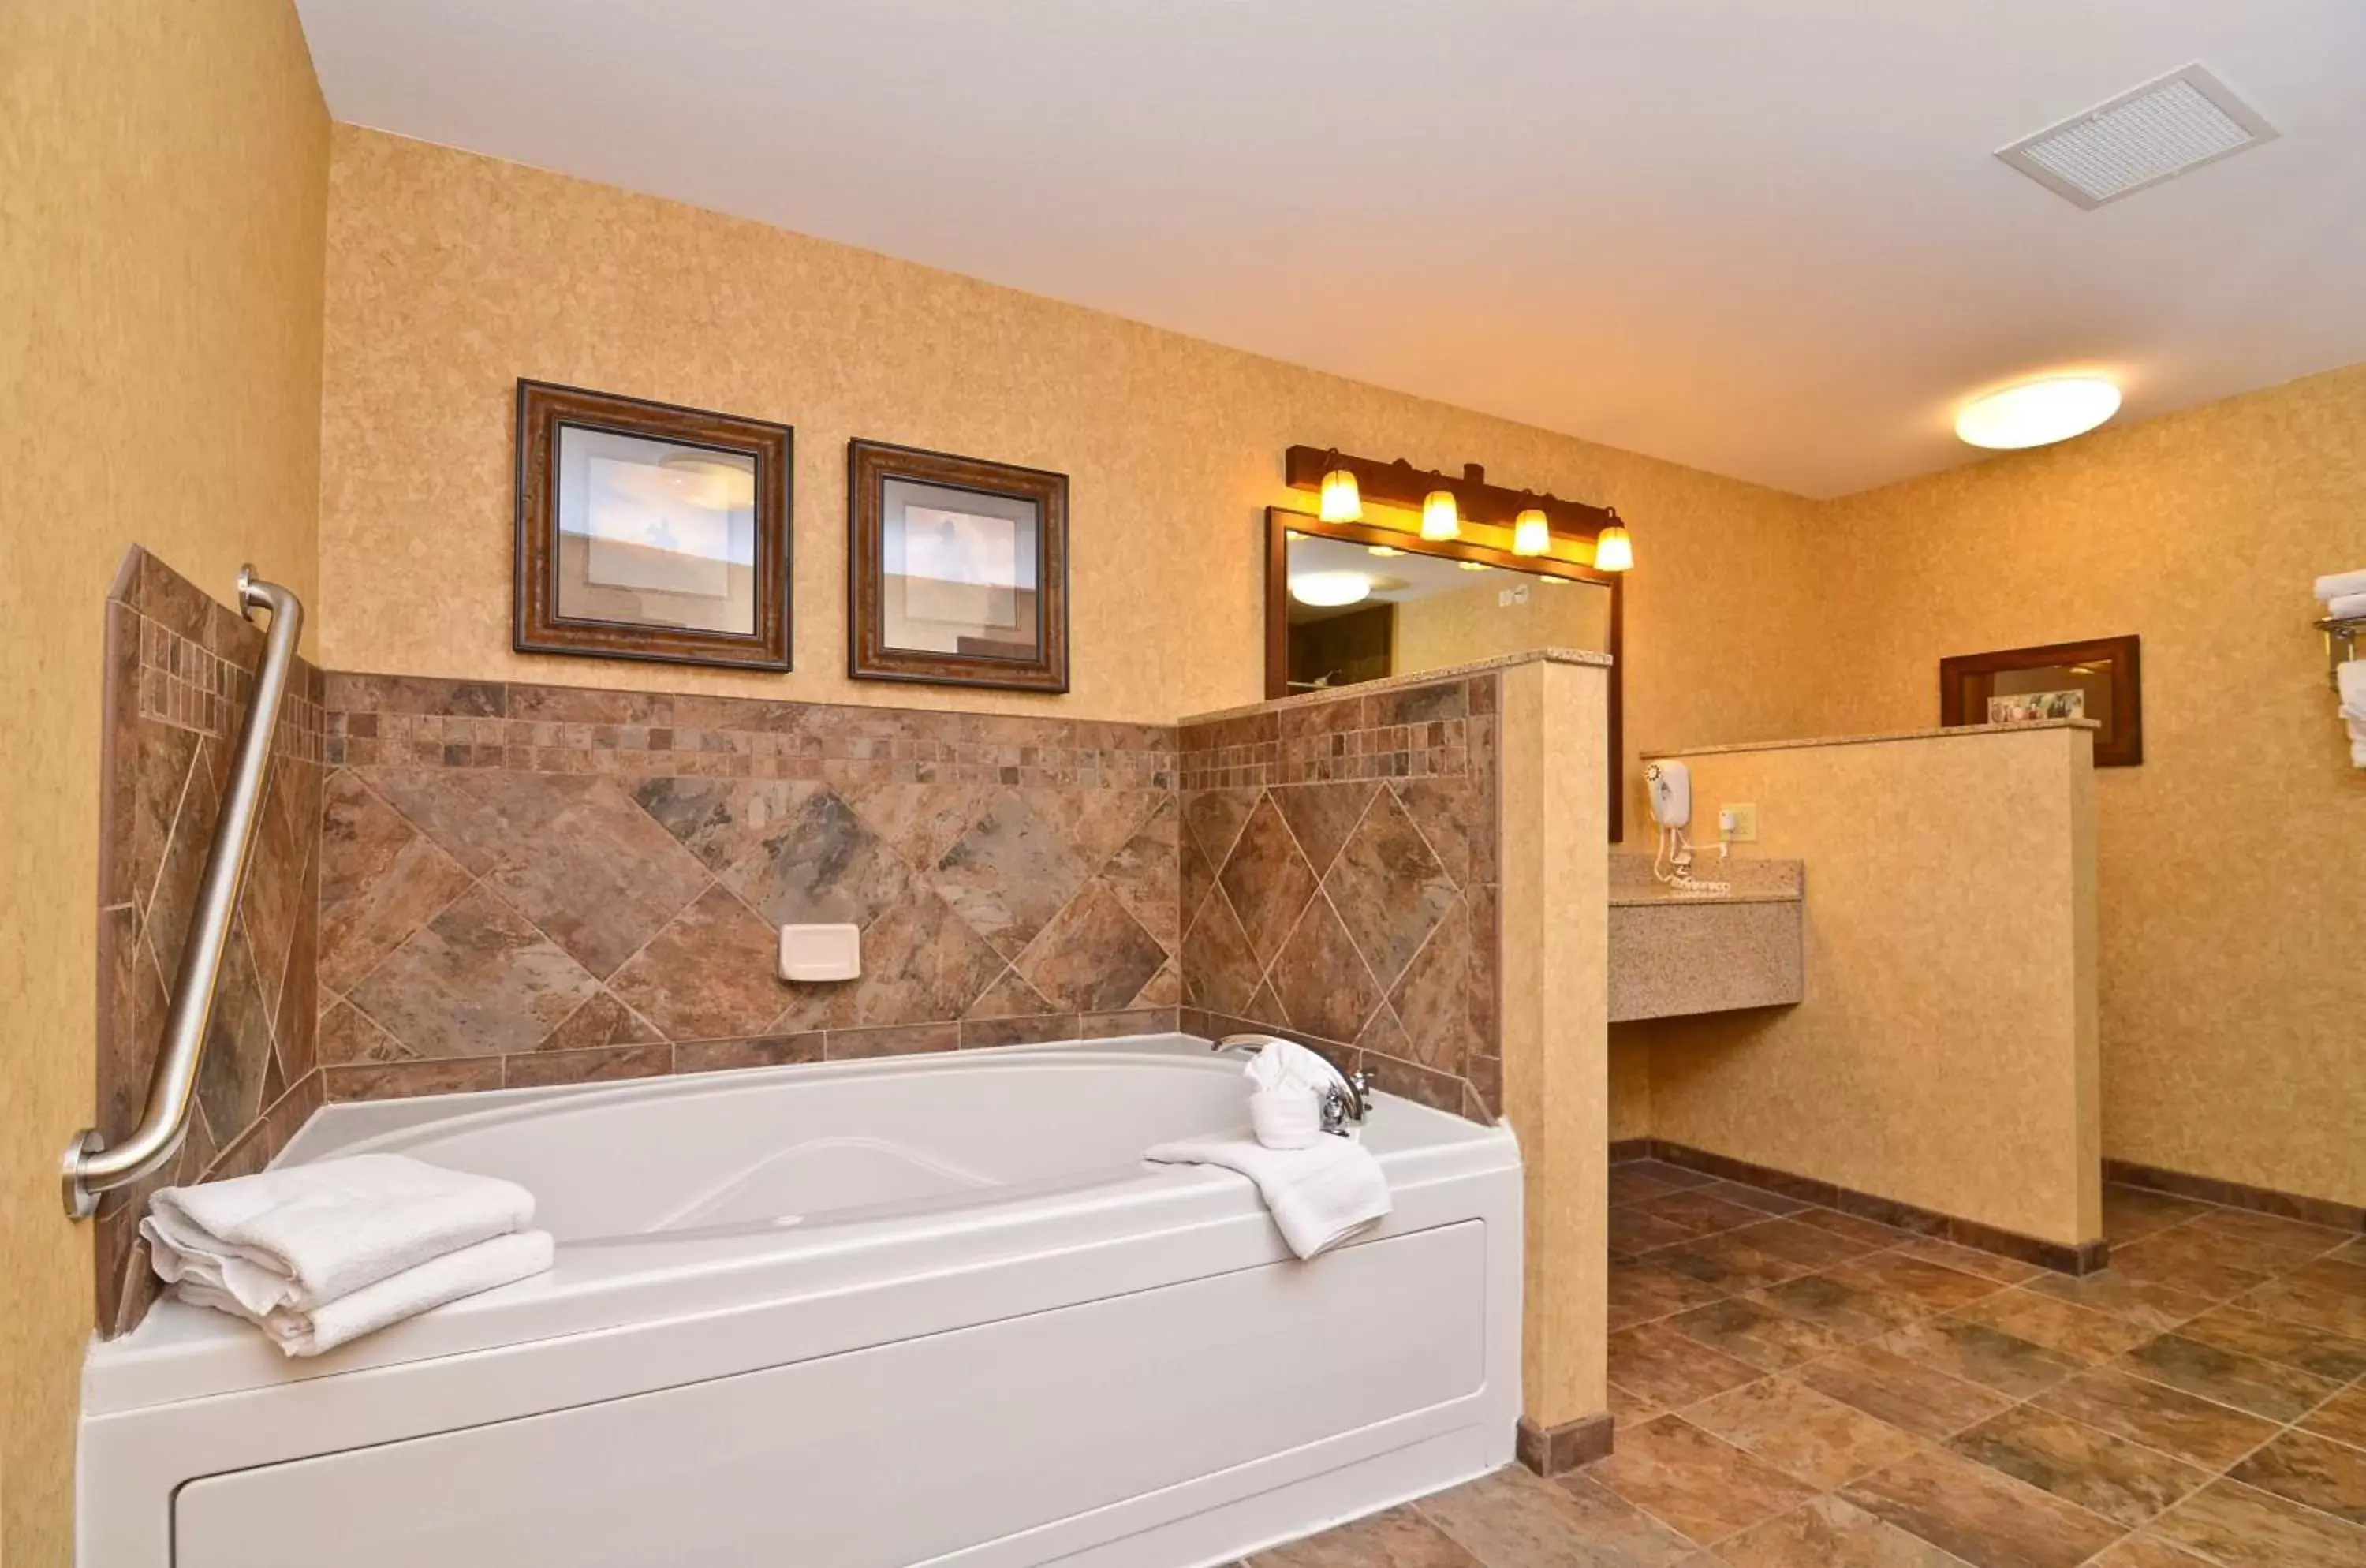 Bathroom in Best Western Plus Kelly Inn and Suites